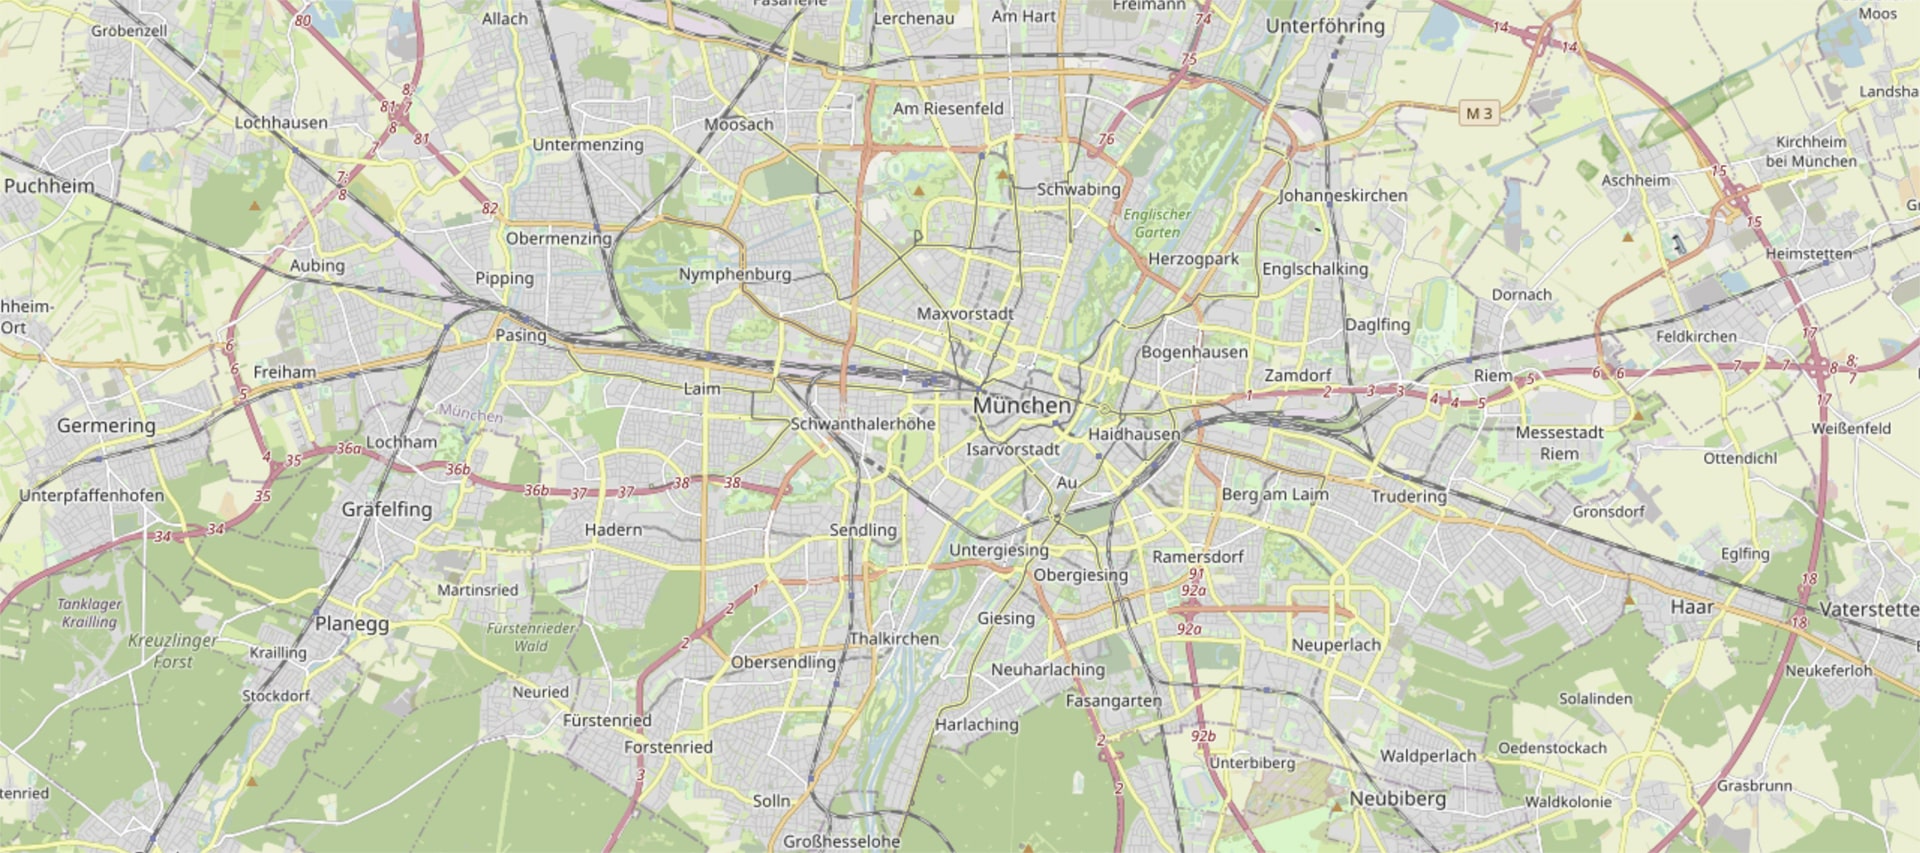 Stadtplan von München und dem Münchner Umland.